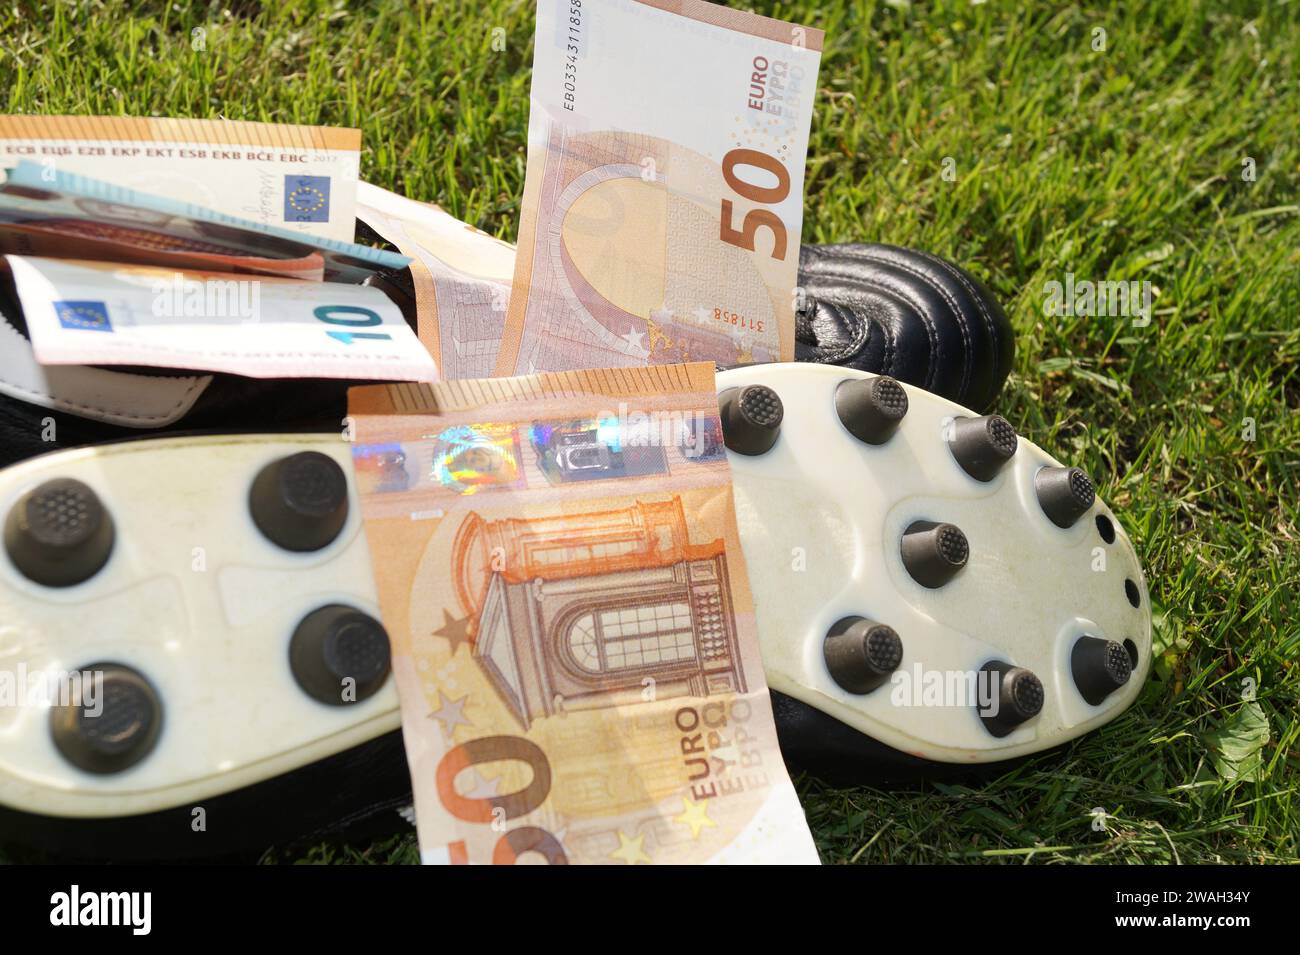 Scarpa da calcio con euro su un campo da calcio, immagine simbolica del calcio professionistico Foto Stock